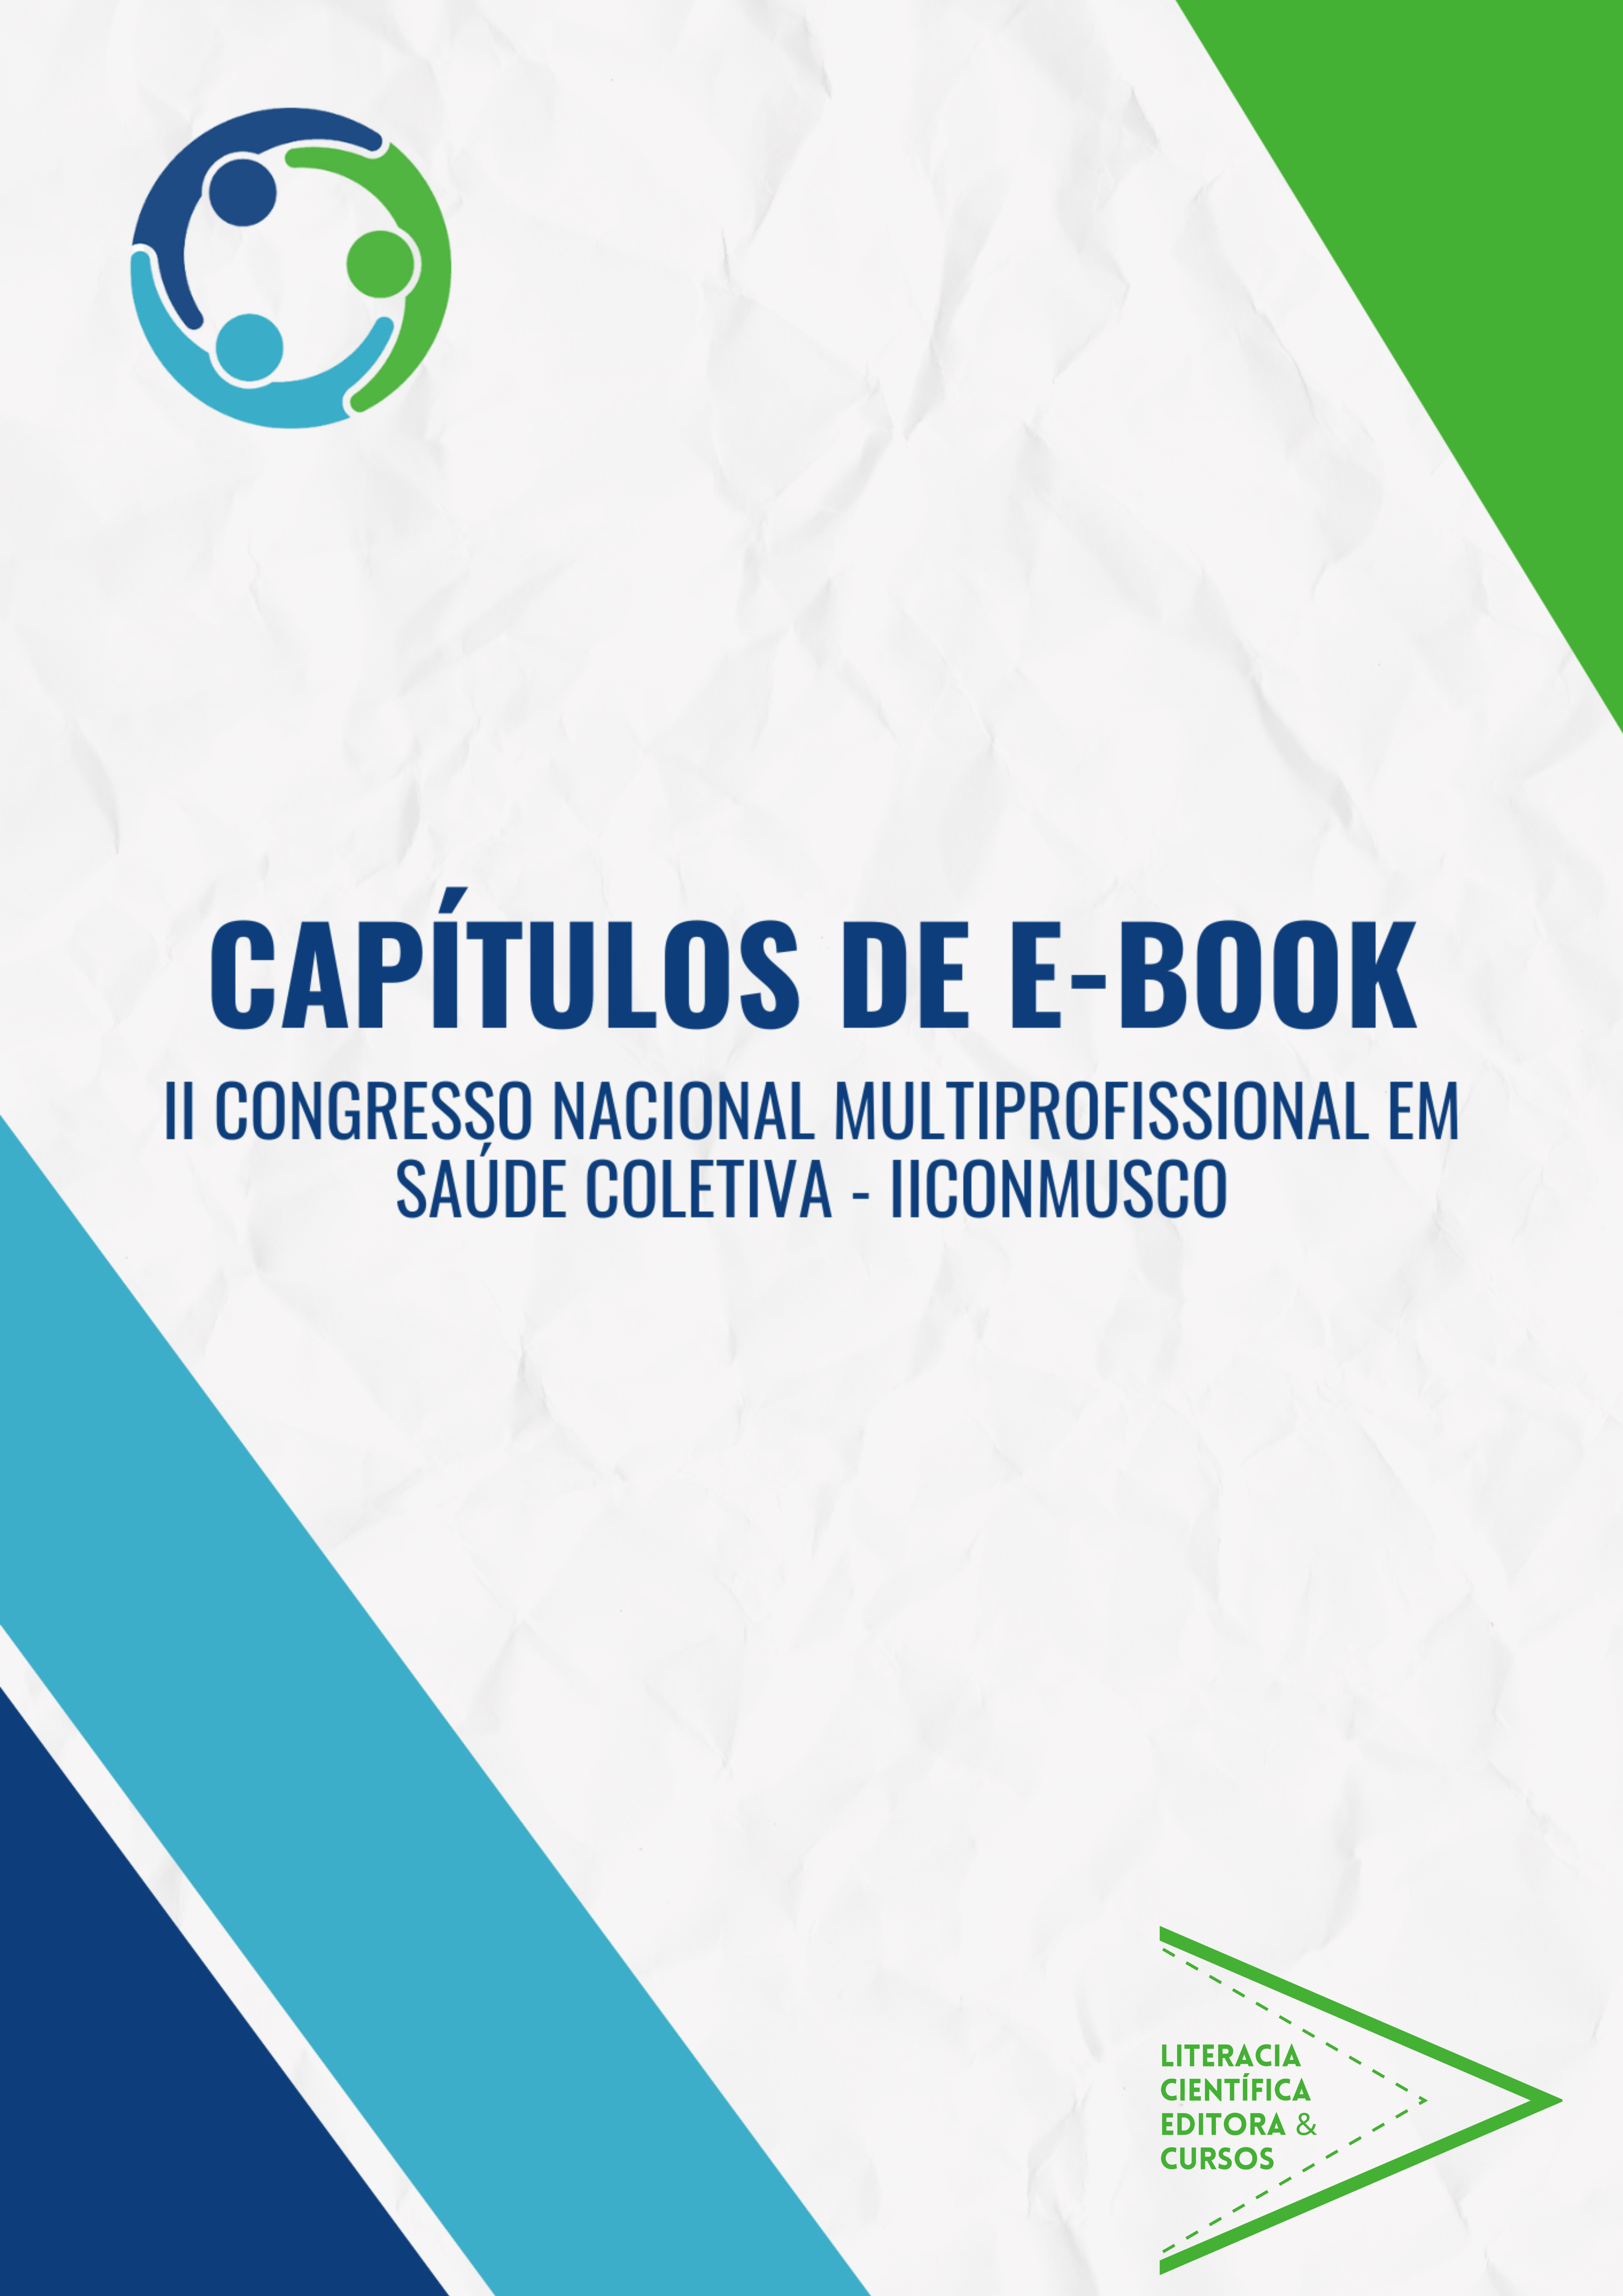 II CONGRESSO NACIONAL MULTIPROFISSIONAL EM SAÚDE COLETIVA (IICONMUSCO): CAPÍTULOS DE E-BOOK